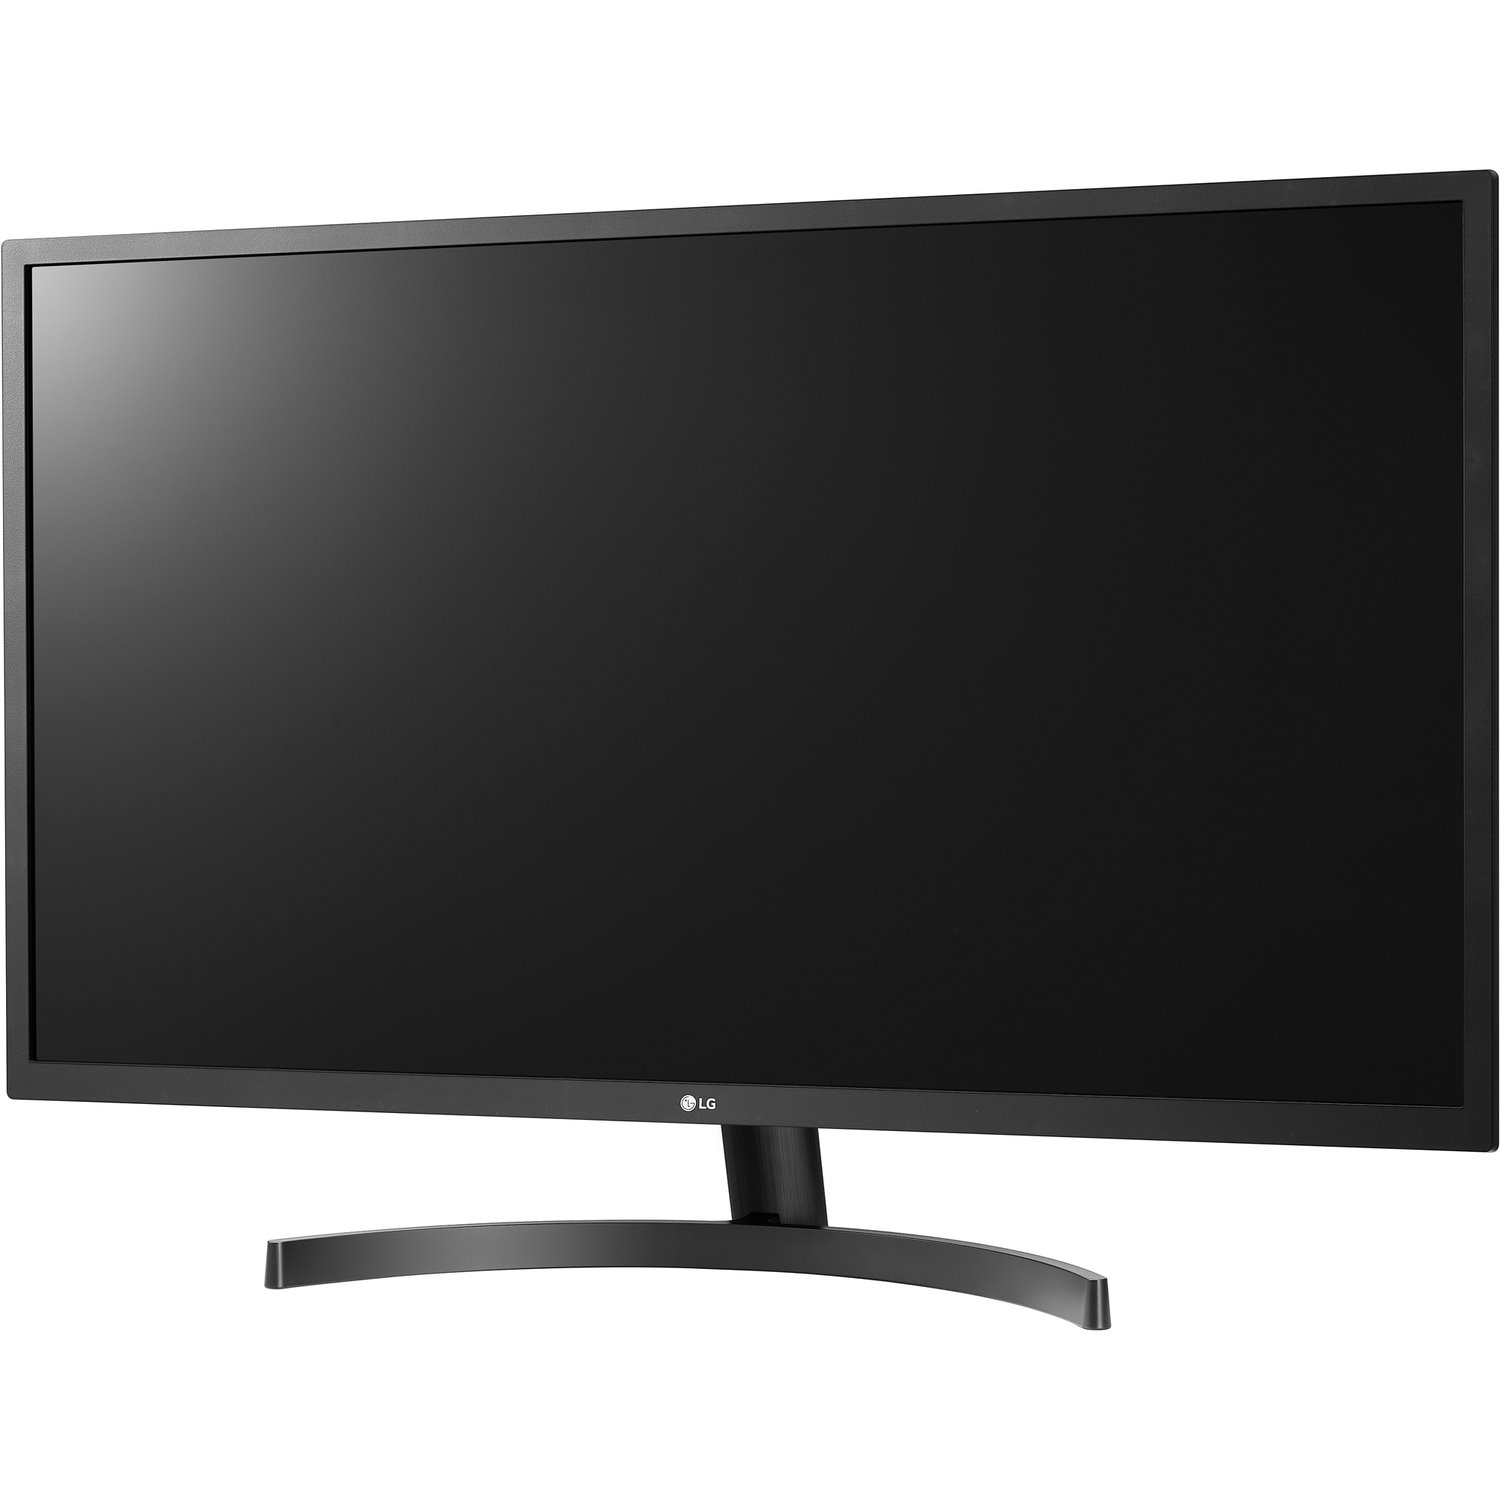 LG 32MN500M-B 32" Class Full HD Gaming LCD Monitor - 16:9